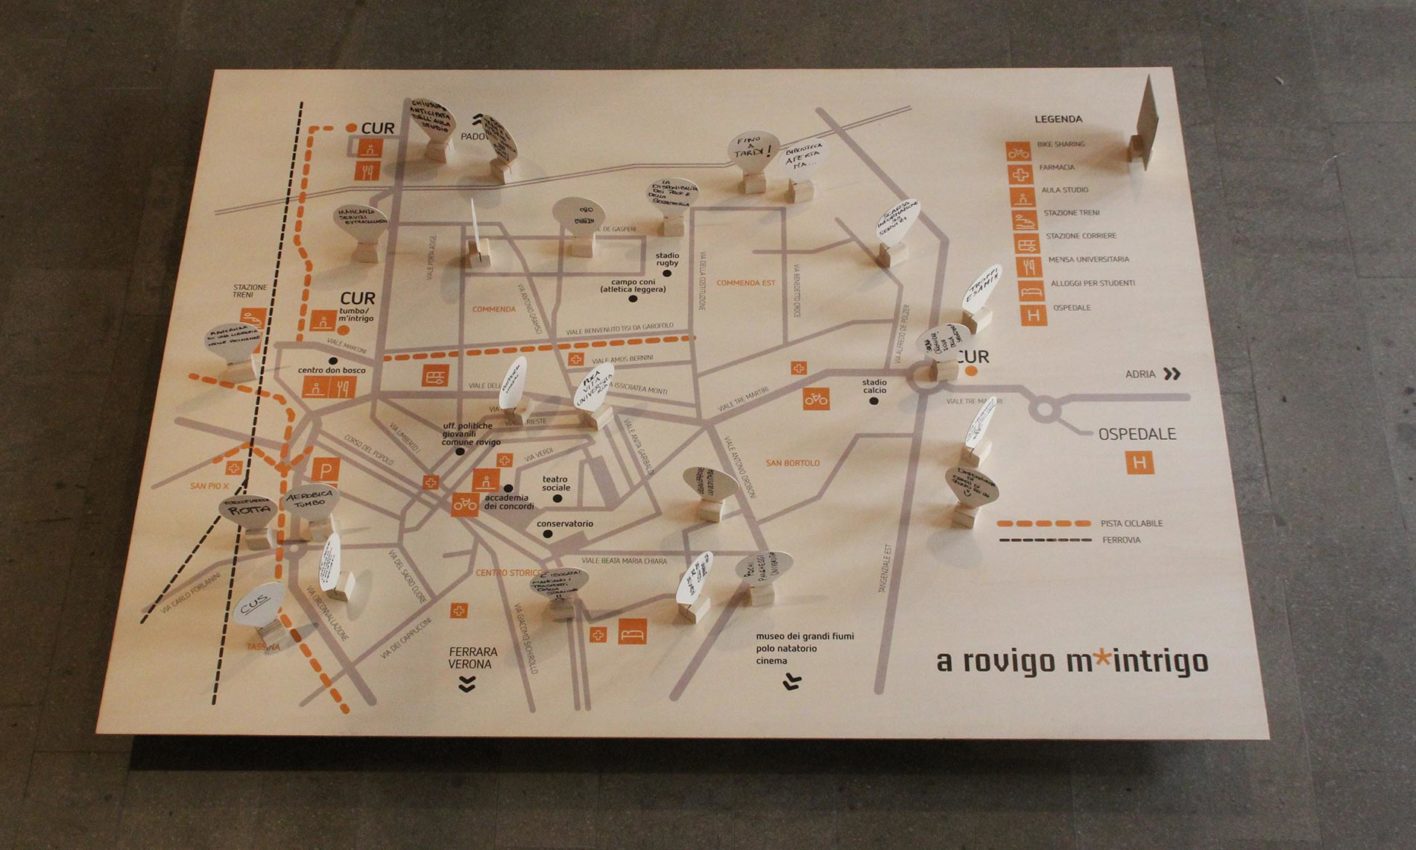 Una delle installazioni della mostra "A Rovigo m*intrigo". Committente: Tumbo Acsd; Committente: Tumbo Acsd; graphic design: Laura Bortoloni, Matteo Zennaro, Francesco Gubbiotti; anno: 2012